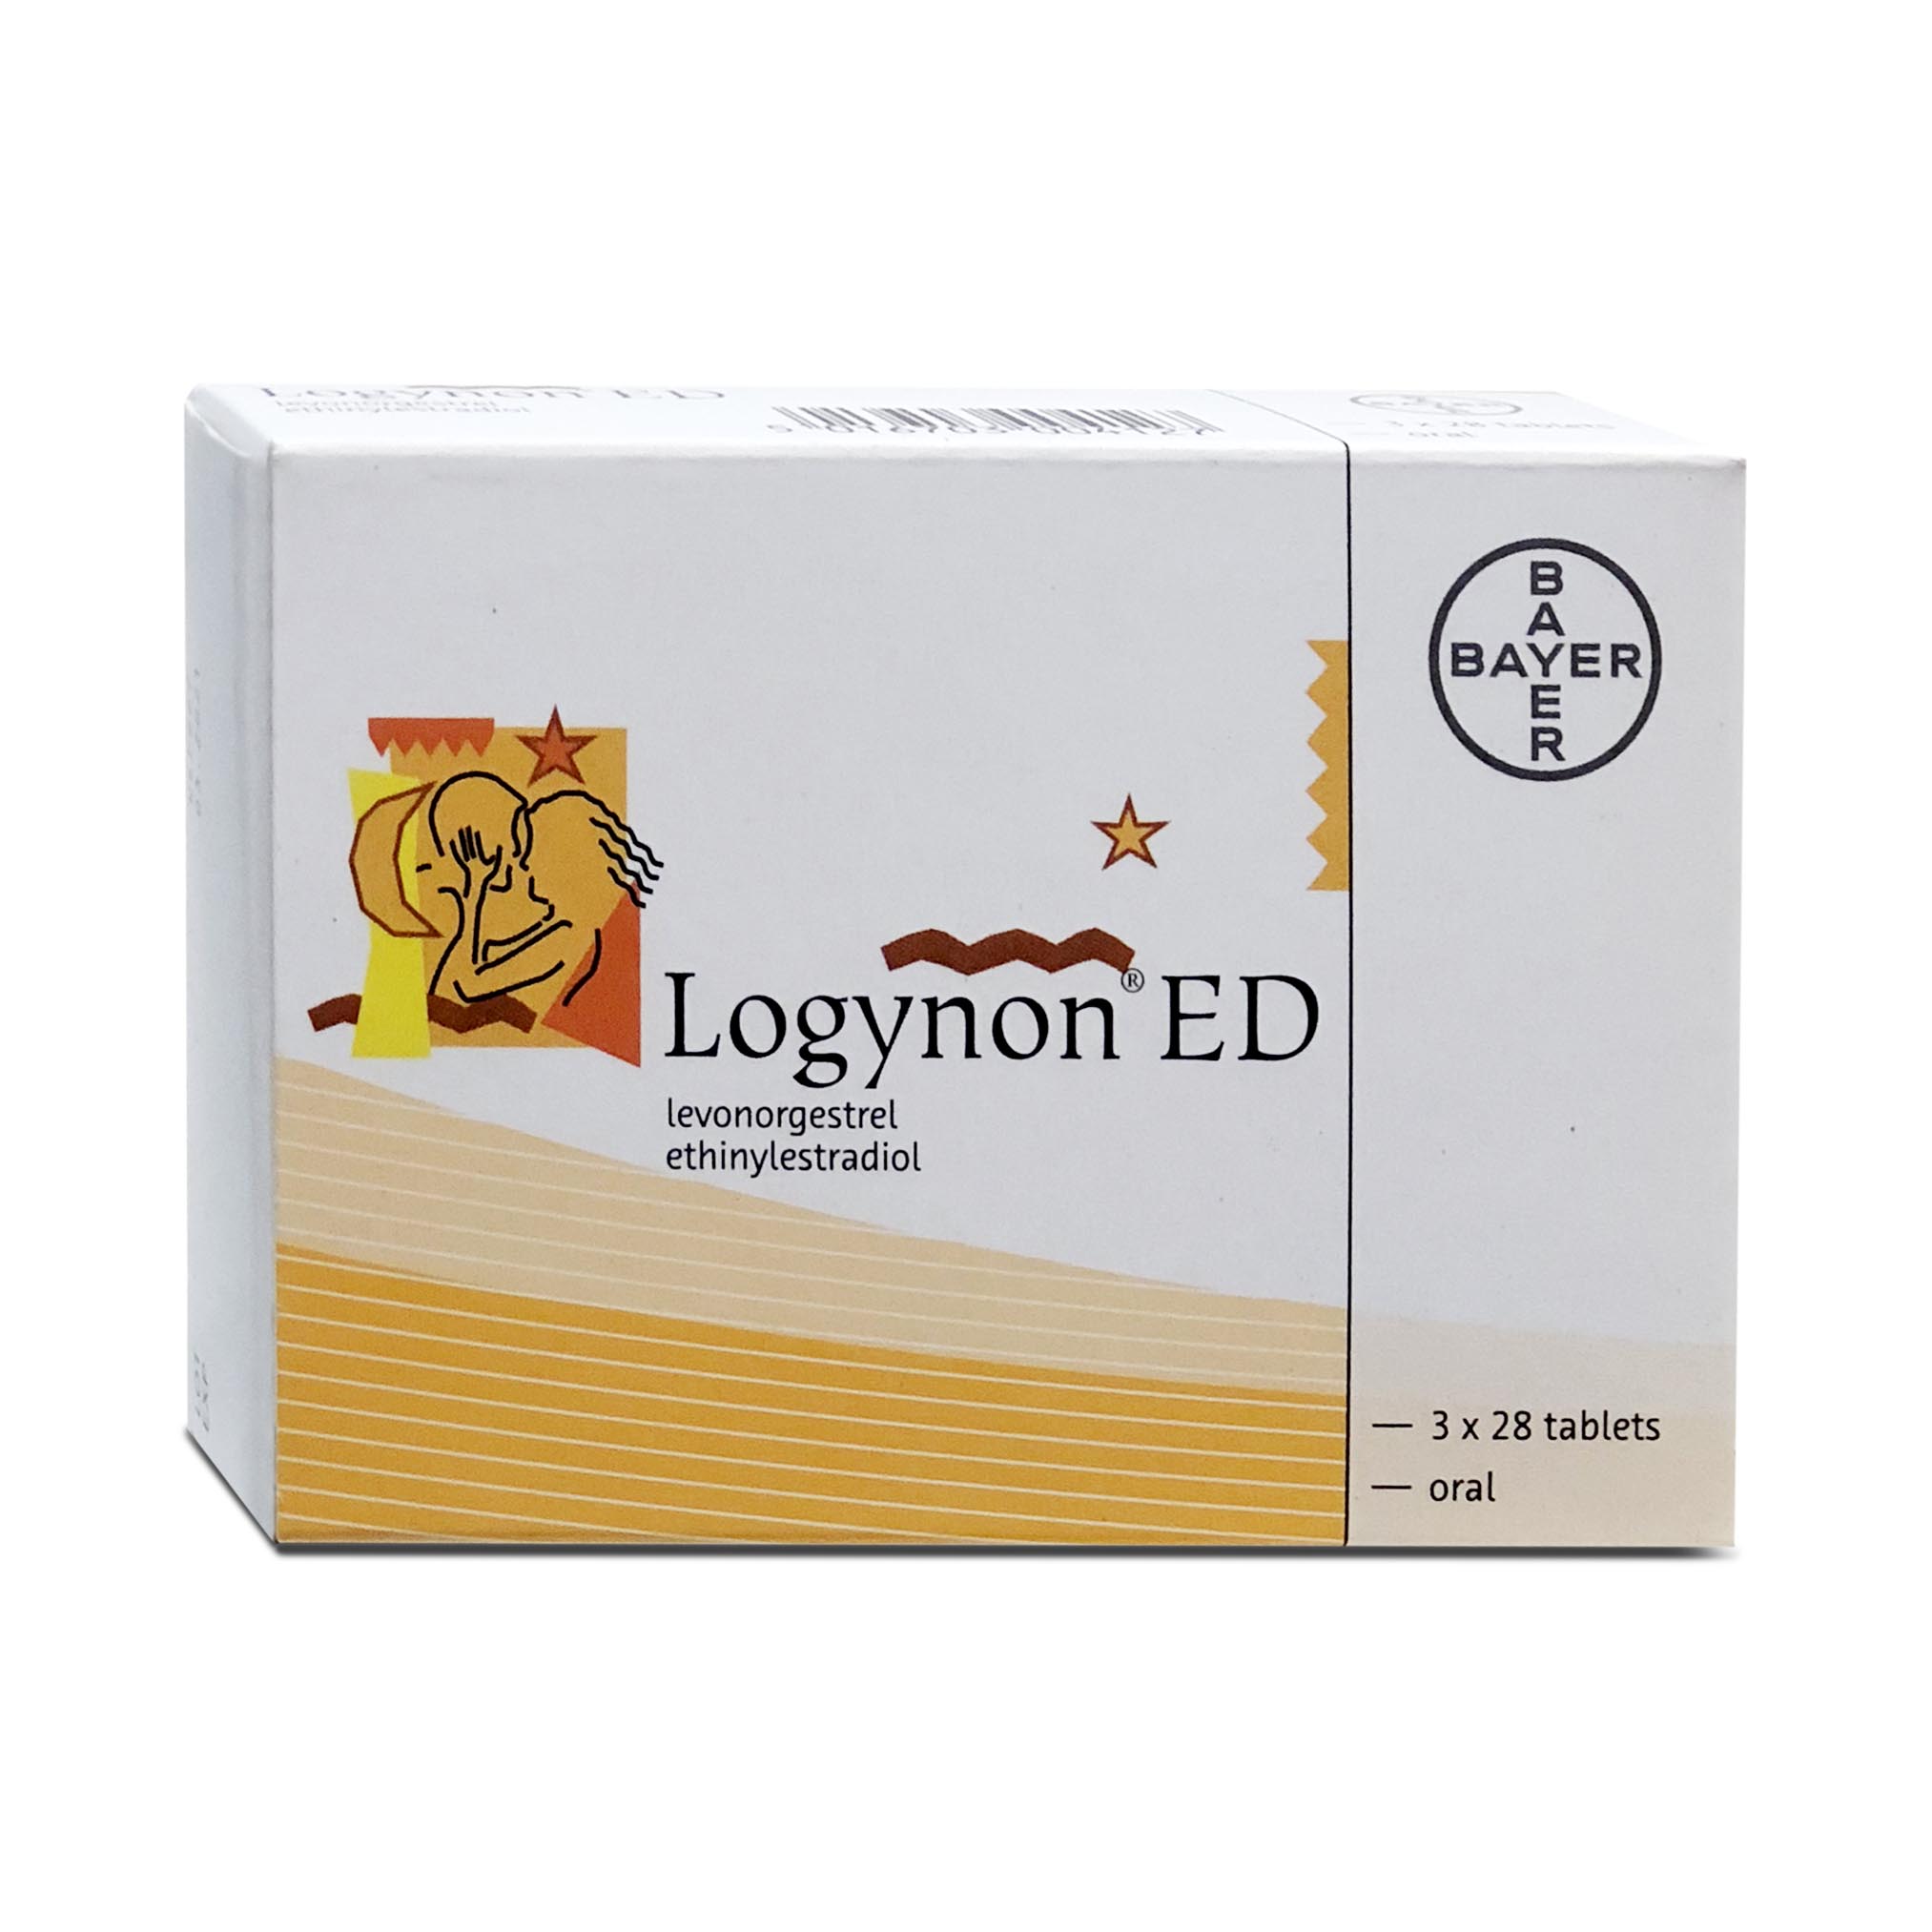 Logynon ED 3 x 28 tablets Bayer